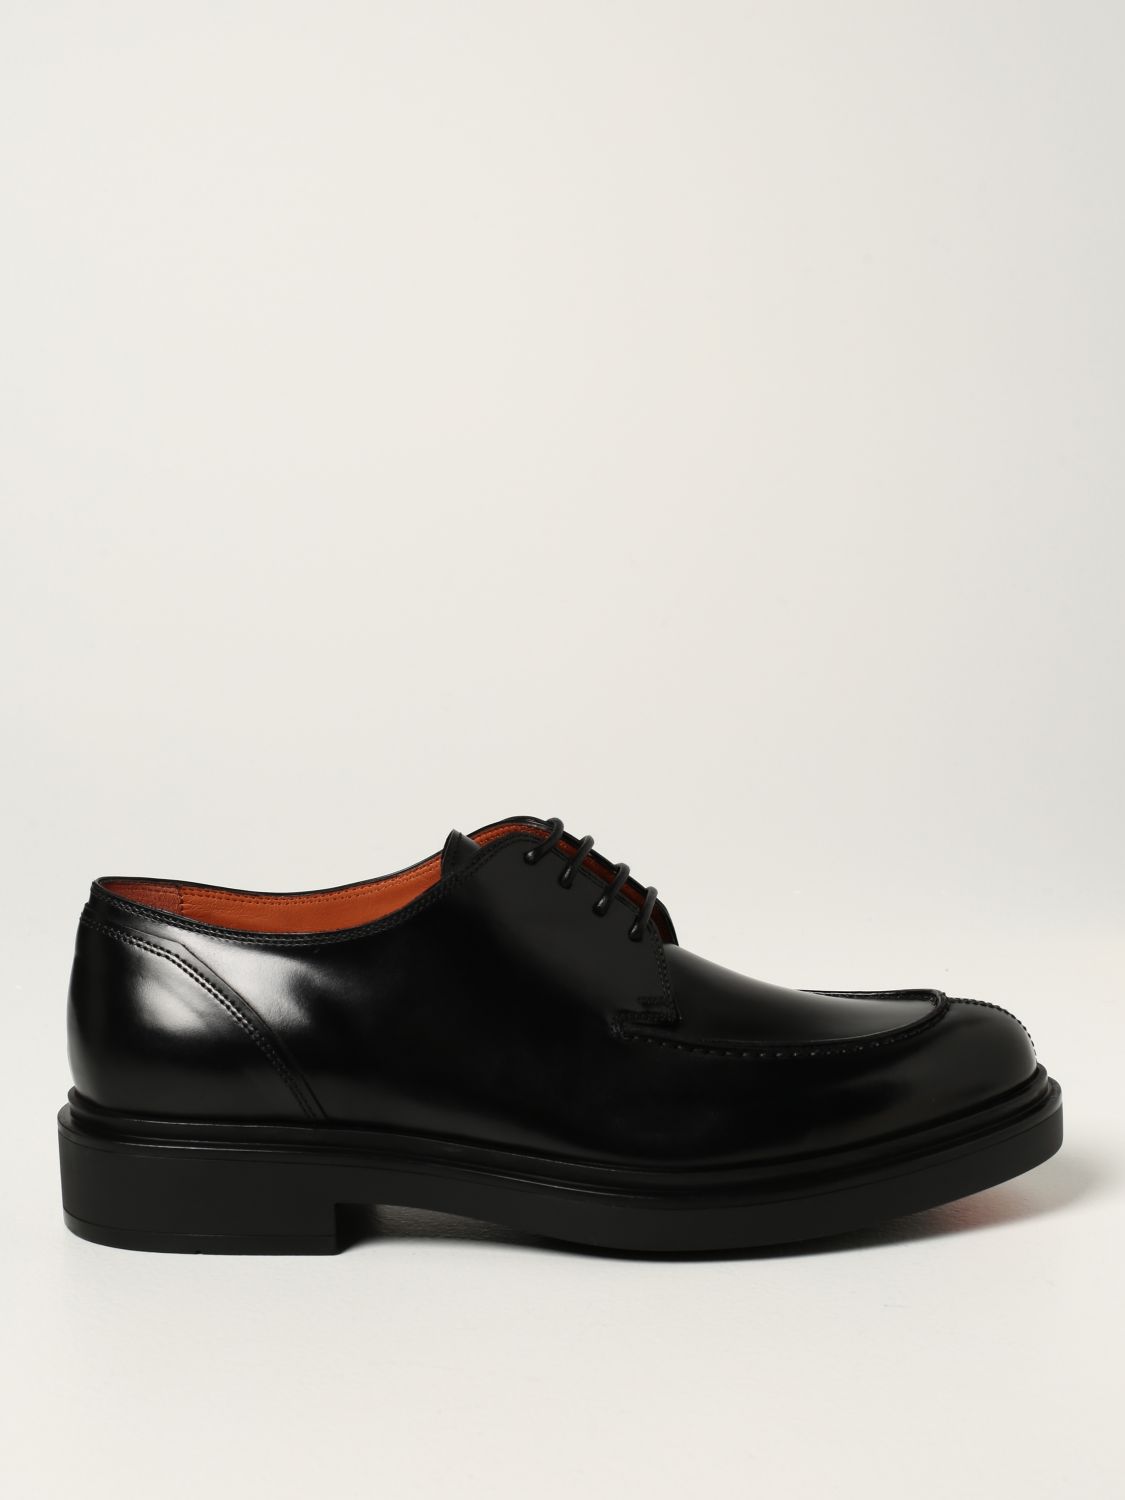 Zapatos de cordones Santoni de Cuero de color Negro para hombre Hombre Zapatos de Zapatos con cordones de Zapatos Oxford 